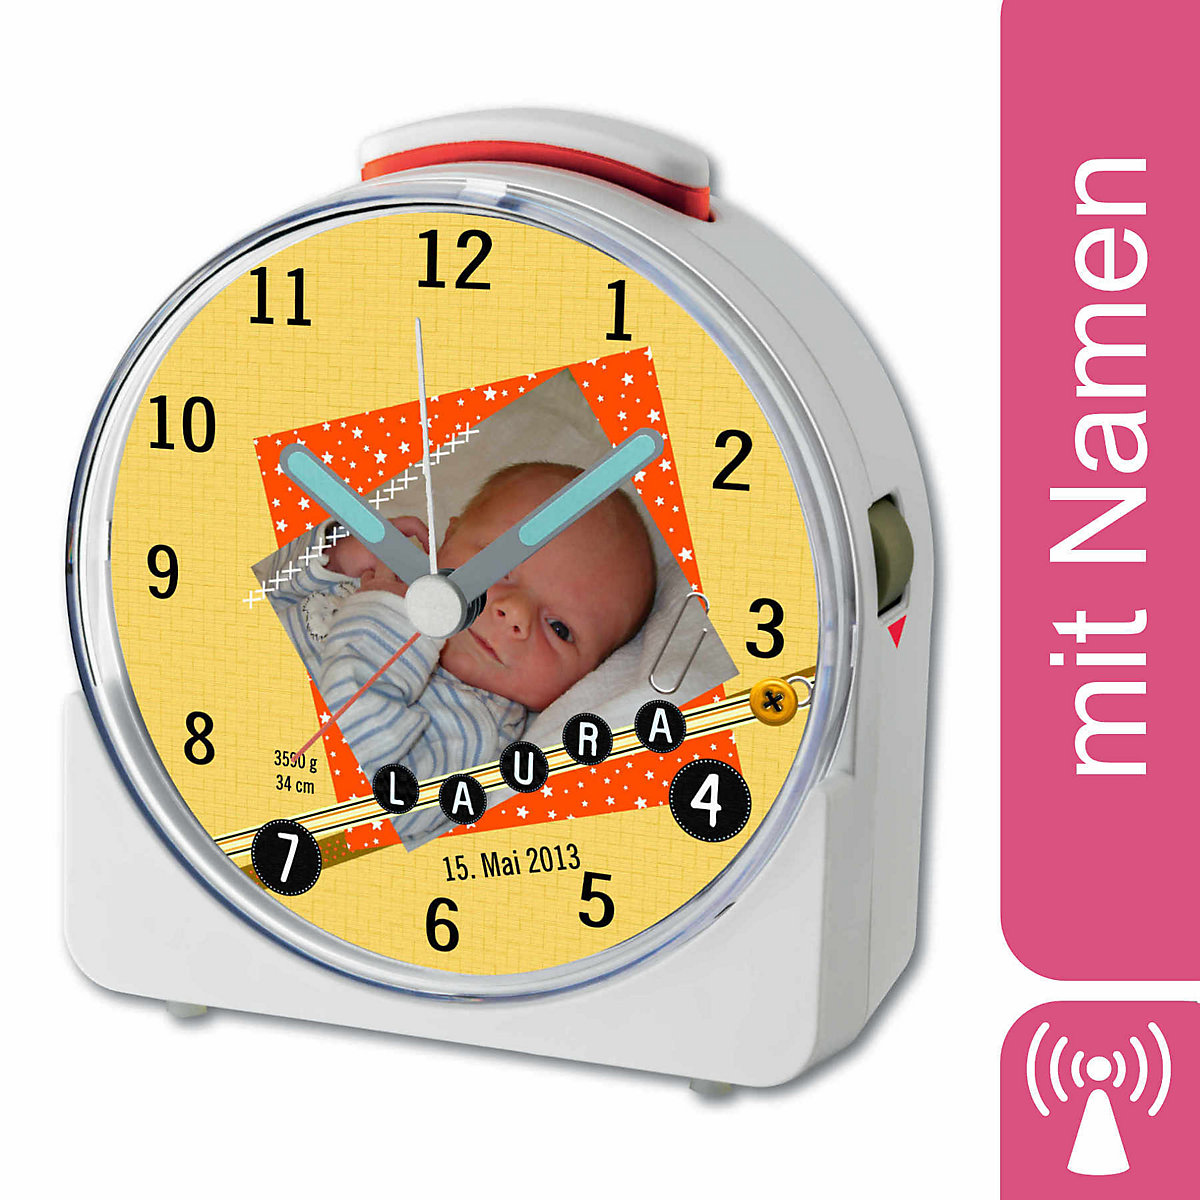 CreaDesign Kinder Funkwecker weiß personalisiert mit Namen Scrapbooking Orange 12-Stunden-Anzeigeformat Geräuschlos/Ohne Ticken Nachtlicht